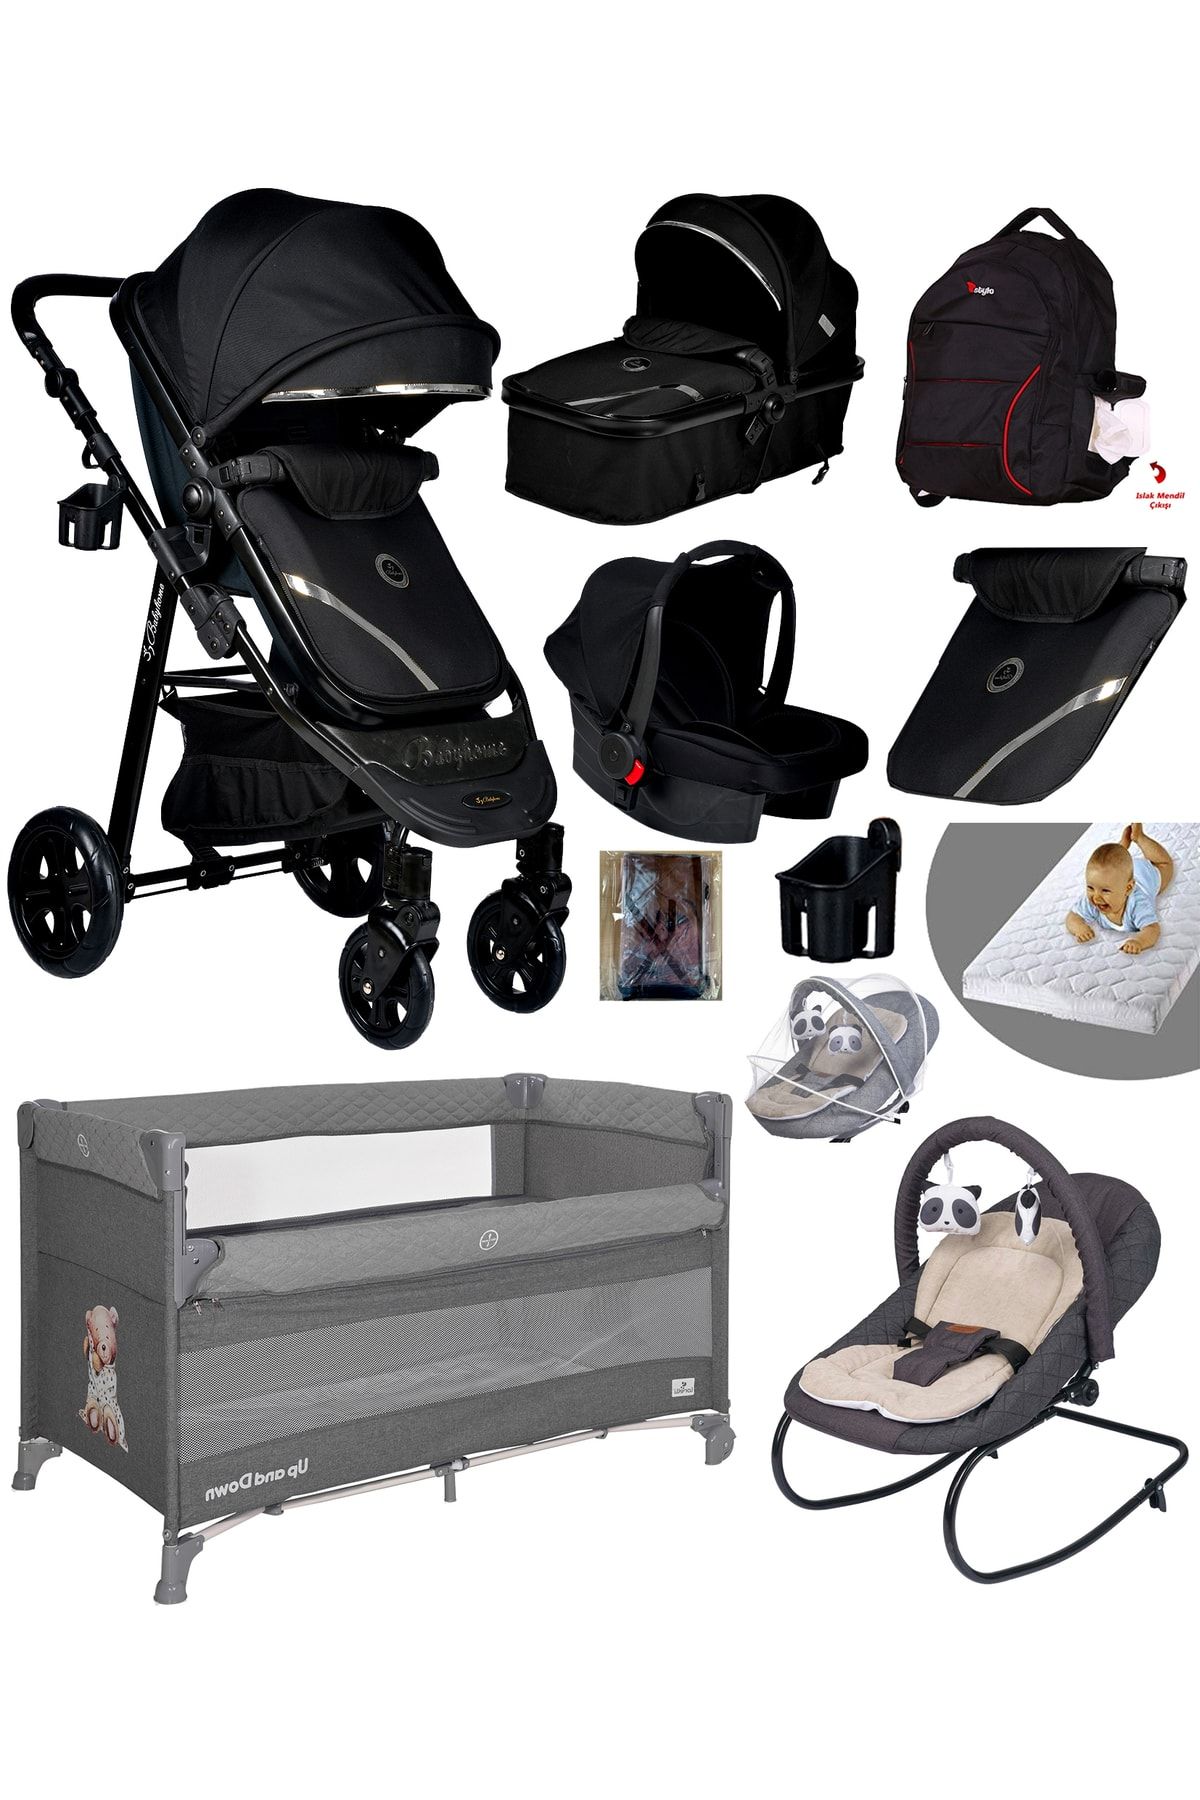 Baby Home Yeni Full Takım 10 In 1 940 Travel Sistem Bebek Arabası Anne Yanı Park Yatak Beşik Ve Ana Kucağı